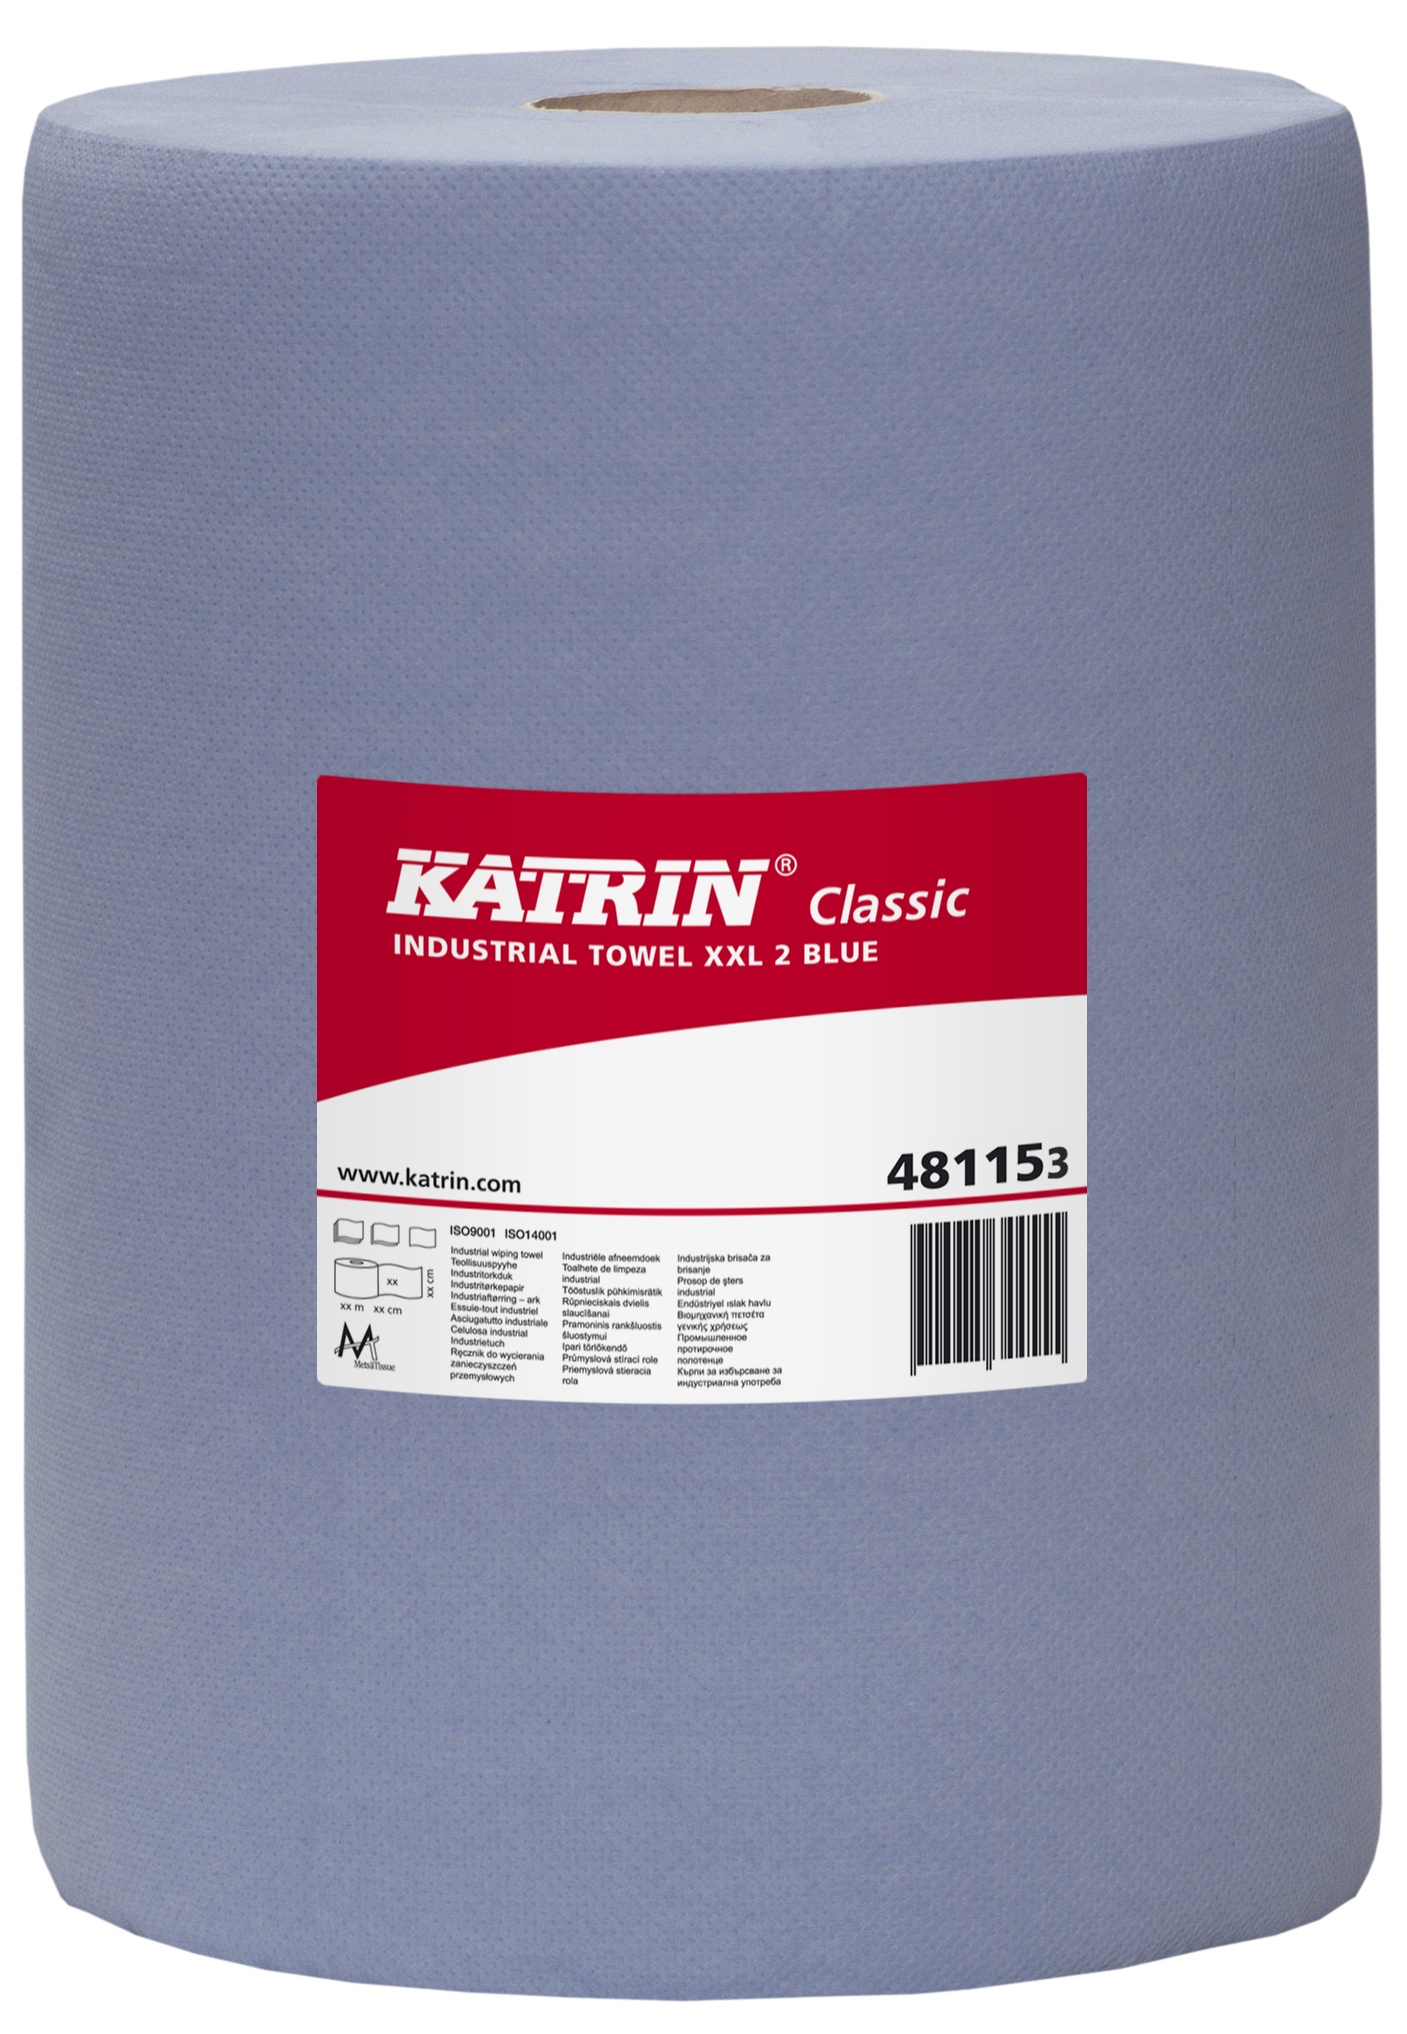 Czyściwo Katrin Classic XXL 2 Blue laminated 481153